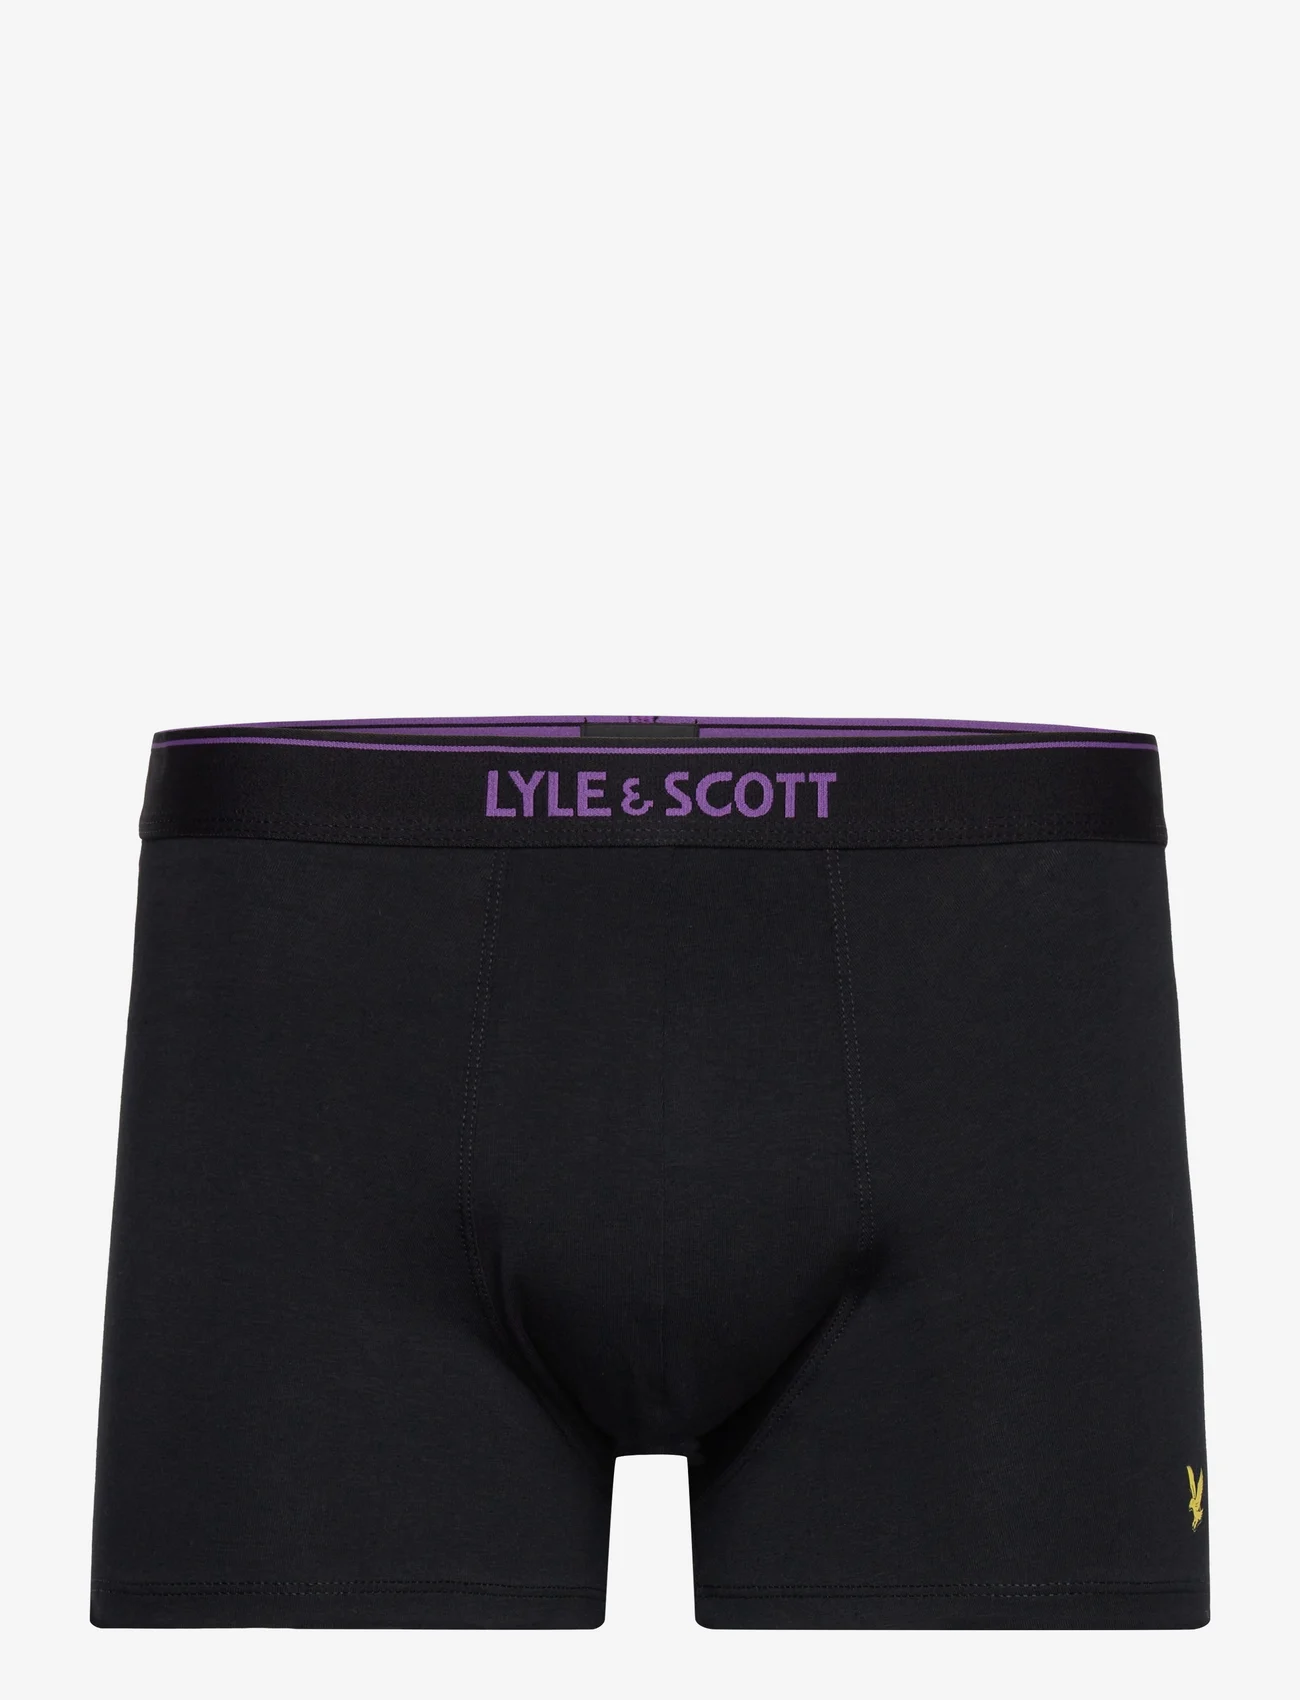 Lyle & Scott - JACKSON - boxer briefs - black multi text waistbands - 1